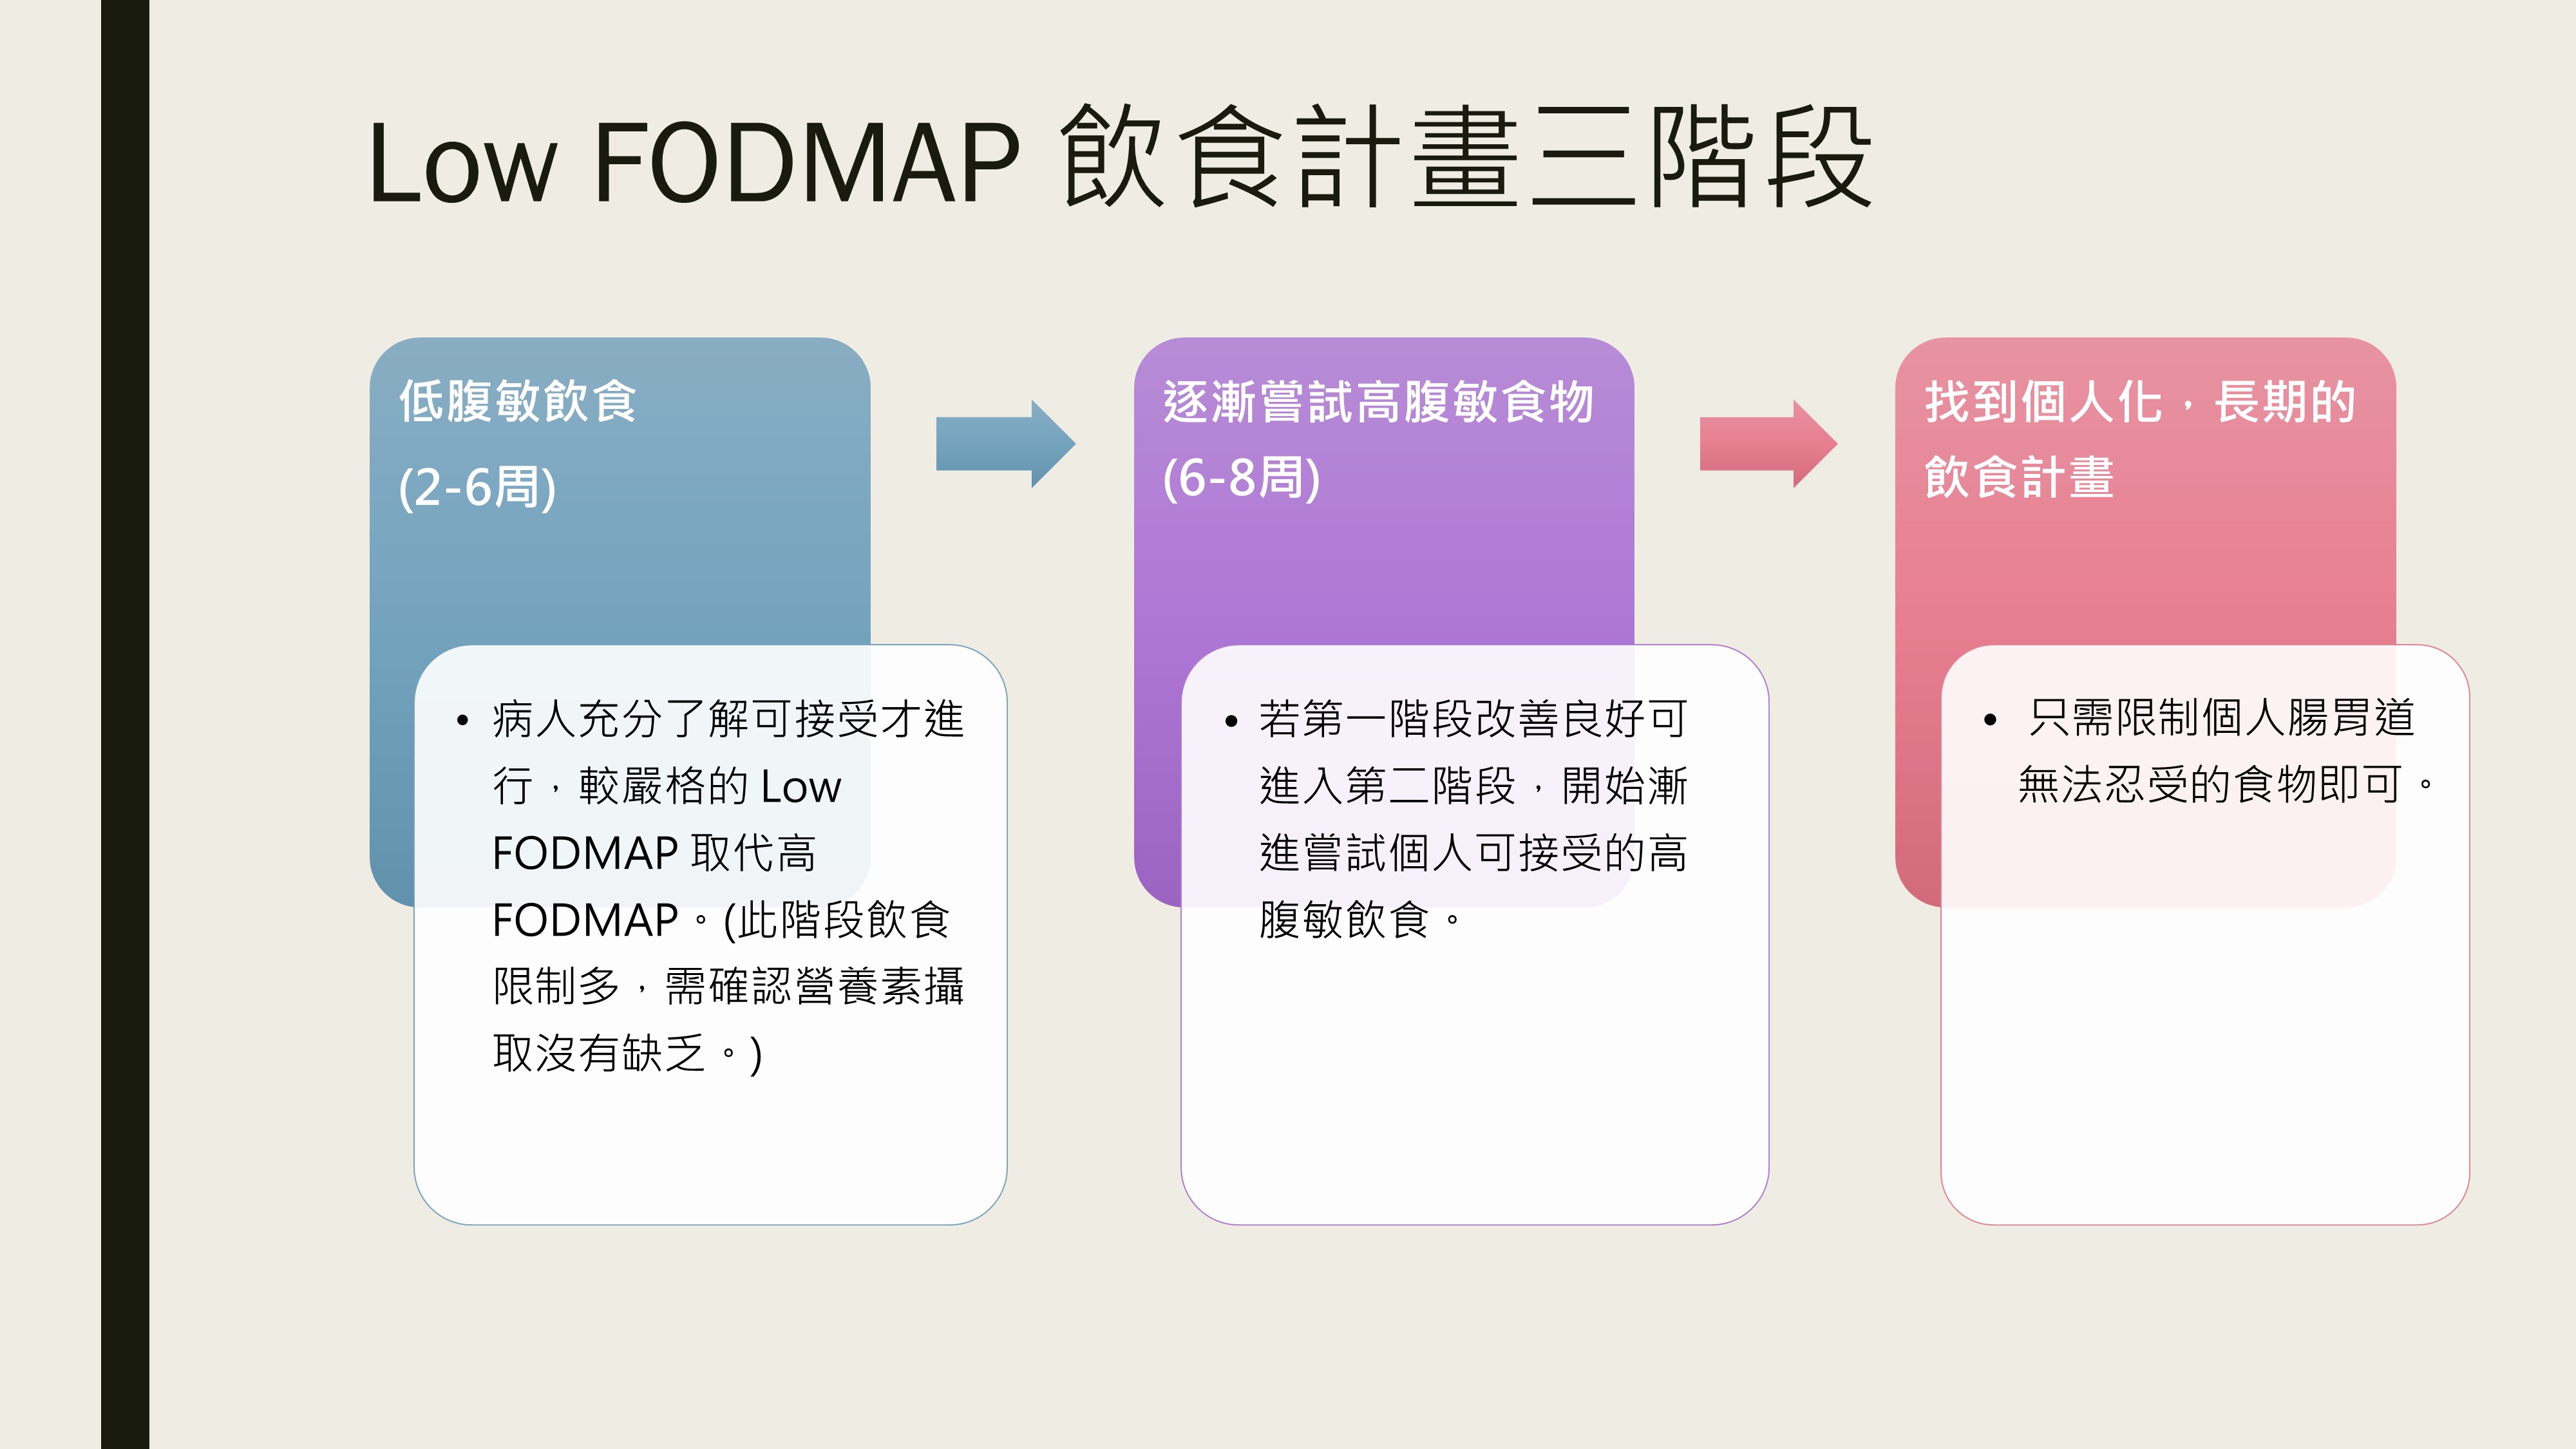 Low FODMAP 飲食計畫三階段